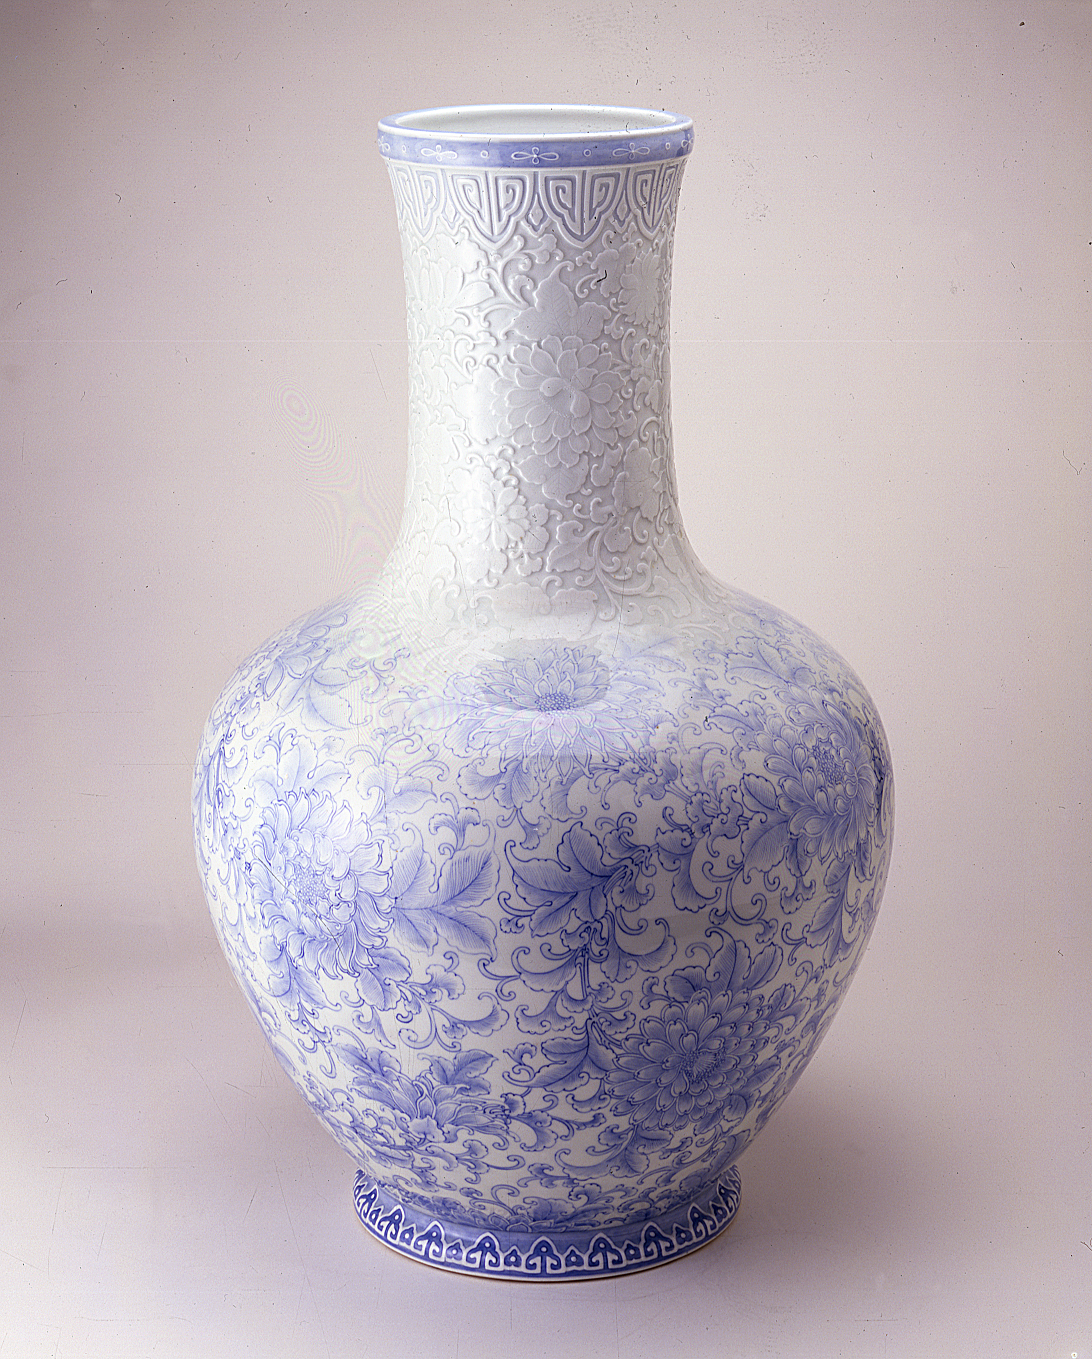 Big vase with hōsōge flowers